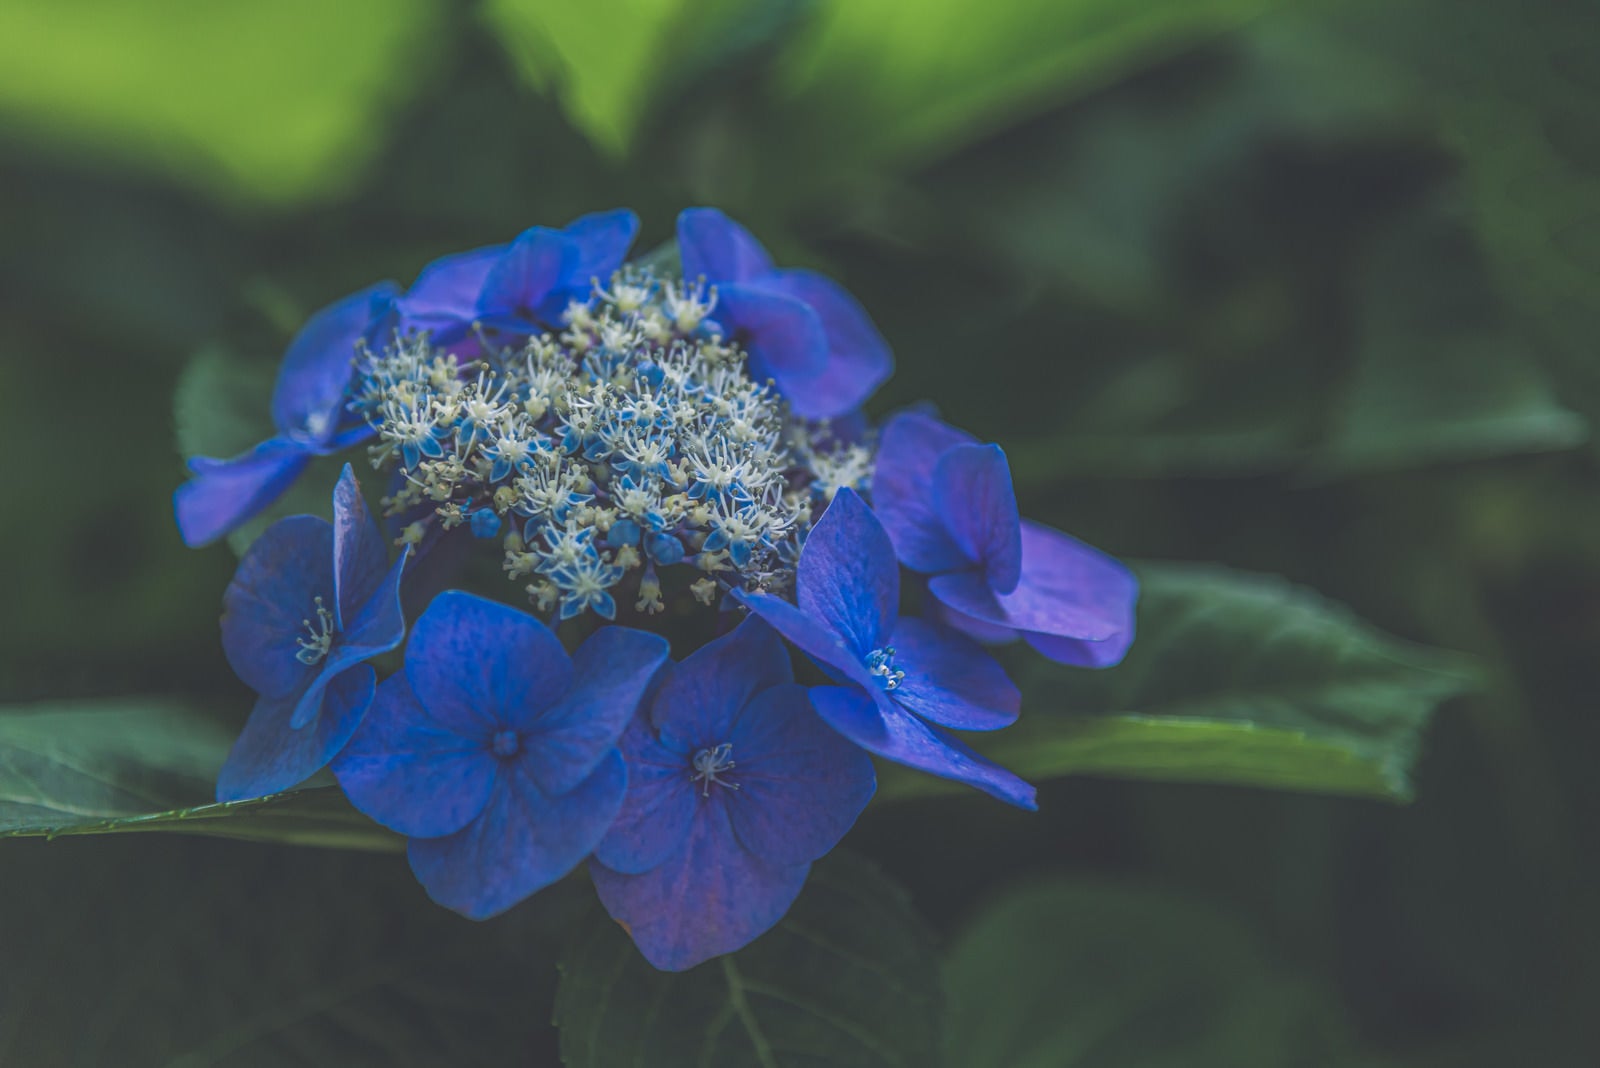 「霞みがかる青い紫陽花」の写真